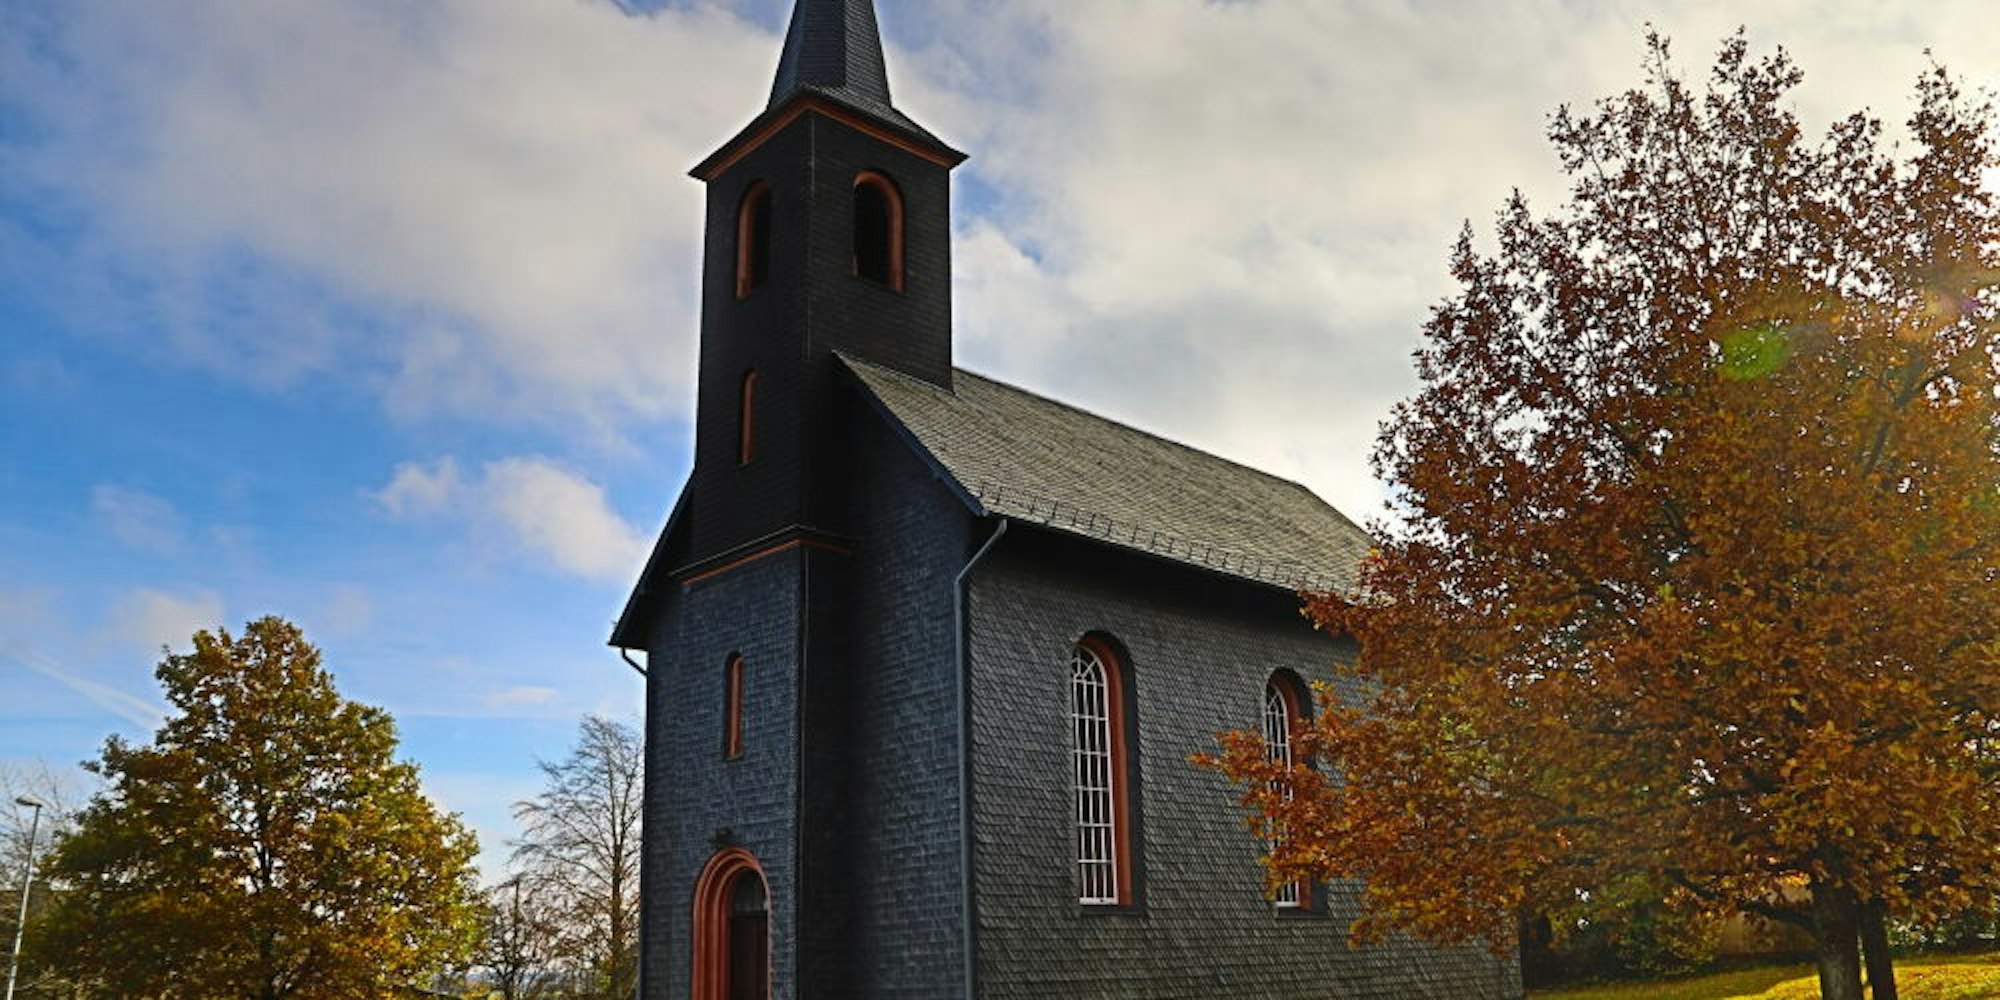 Ferienwohnungen sollen in der ehemaligen Evangelischen Kirche in Harperscheid entstehen, die im Jahr 1861 eingeweiht worden war.